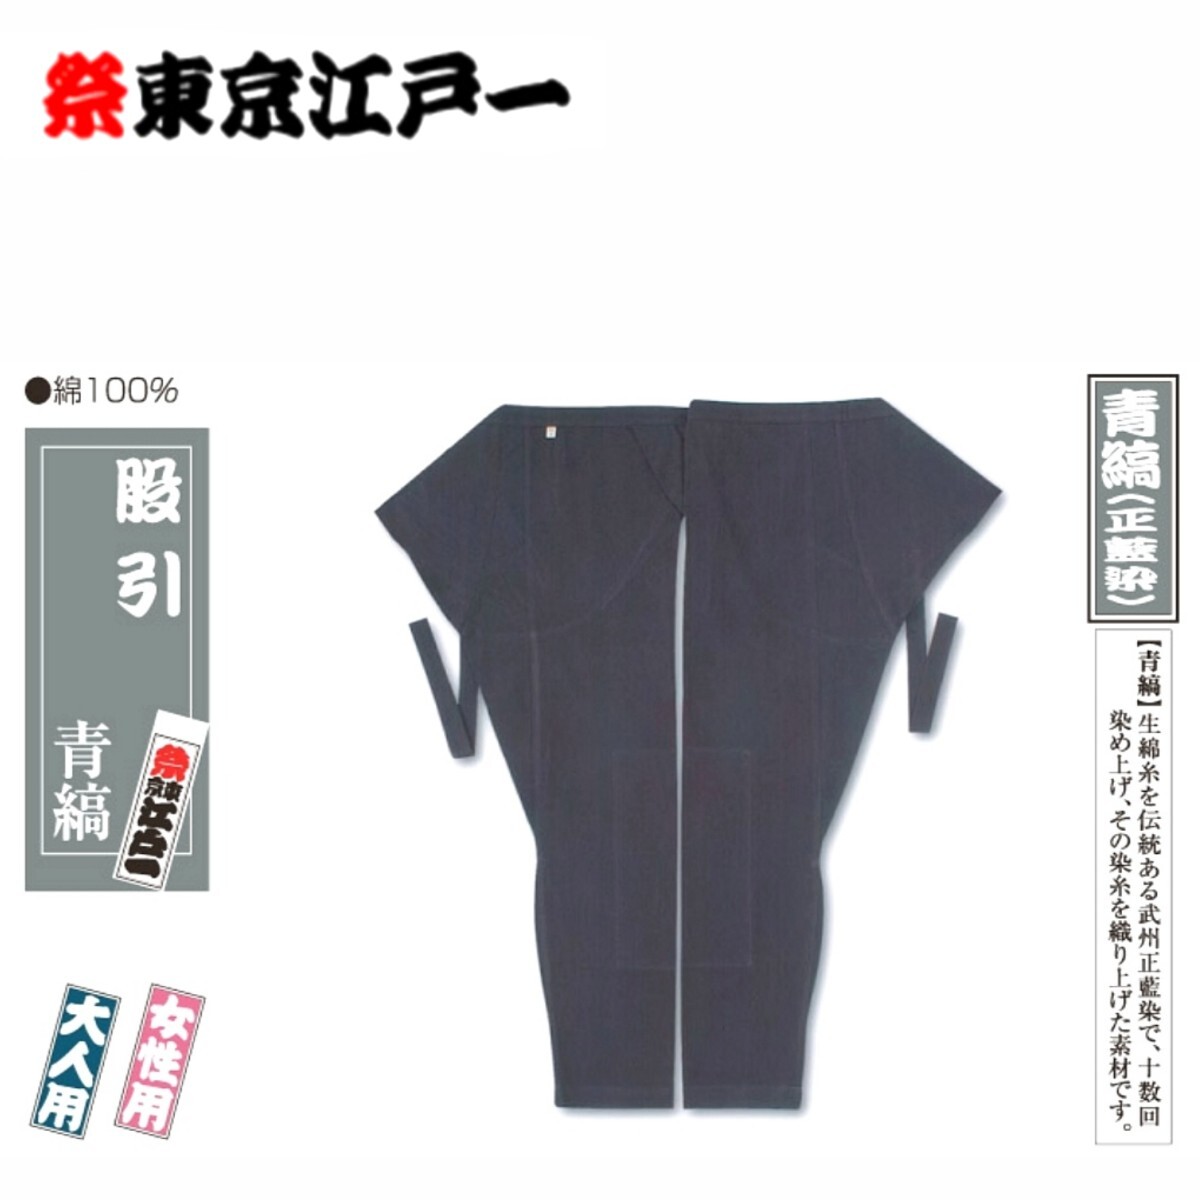 [ новый товар не использовался класс ] праздник костюм / Edo один /. скидка / синий . правильный индиго .[ большой ] взрослый женский размер 